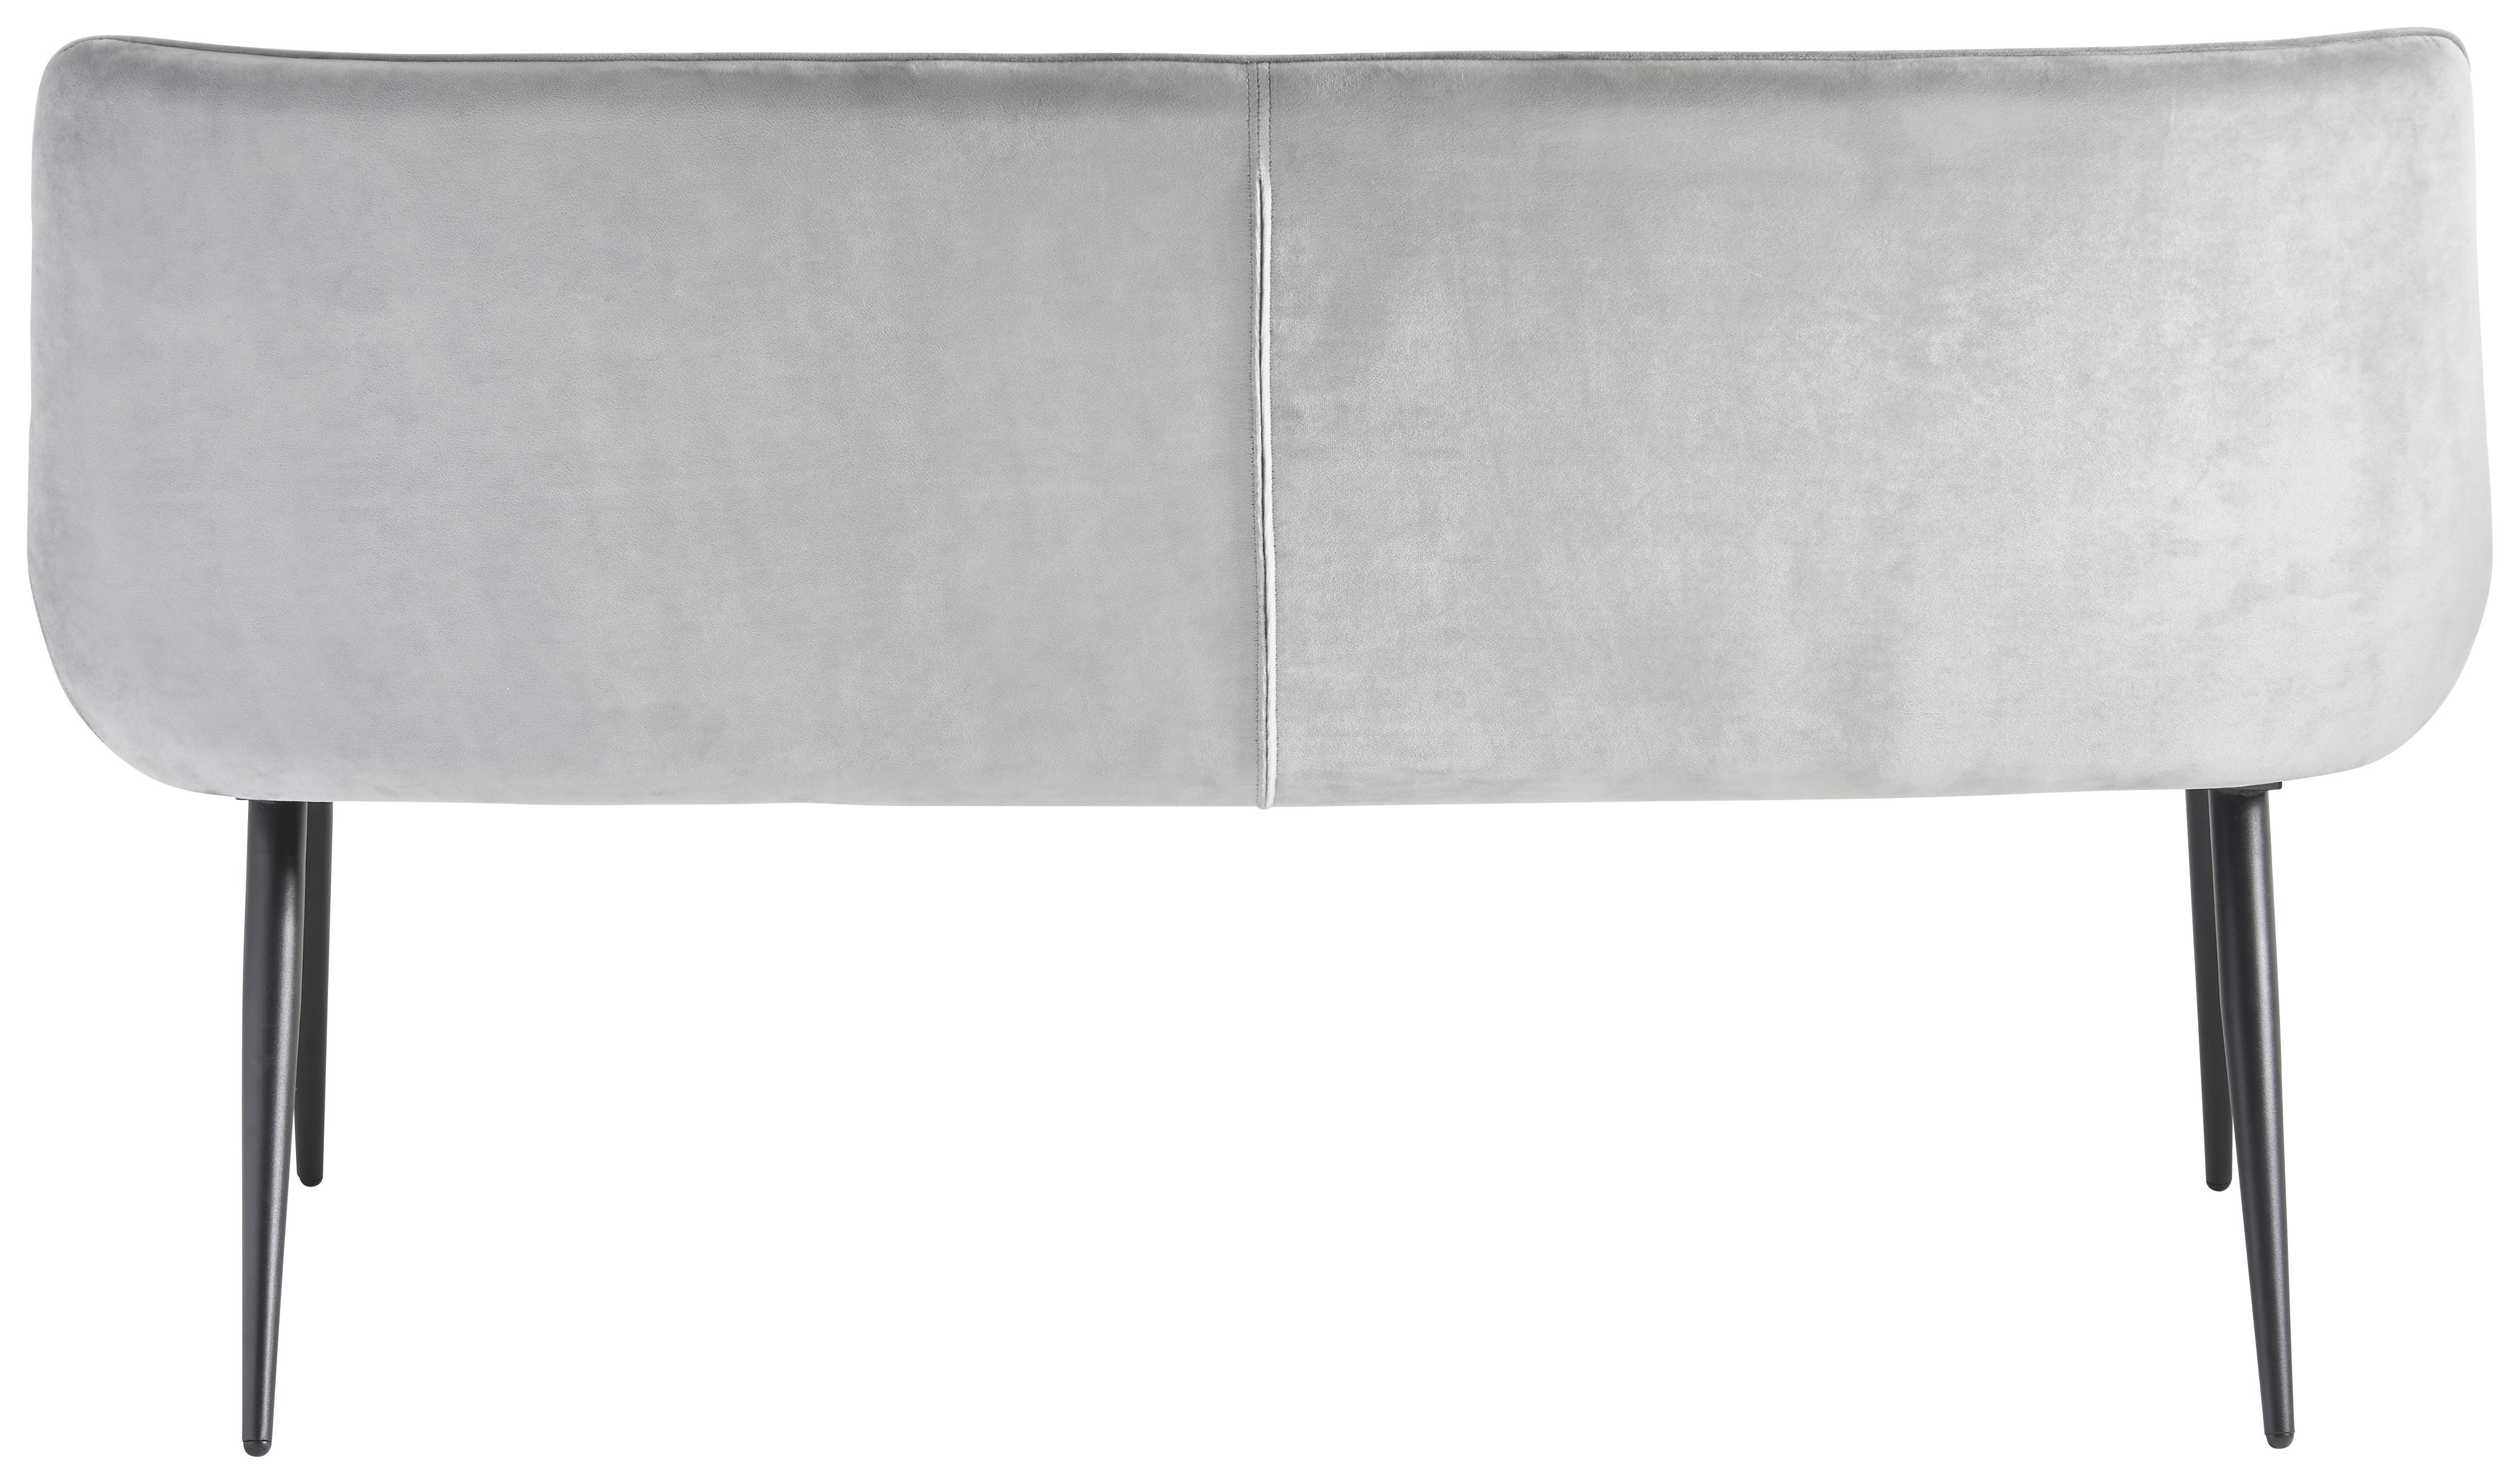 Sitzbank mit Lehne Gepolstert Grau/Schwarz Marion B: 160 cm - Schwarz/Grau, MODERN, Textil/Metall (160/90/64cm) - MID.YOU